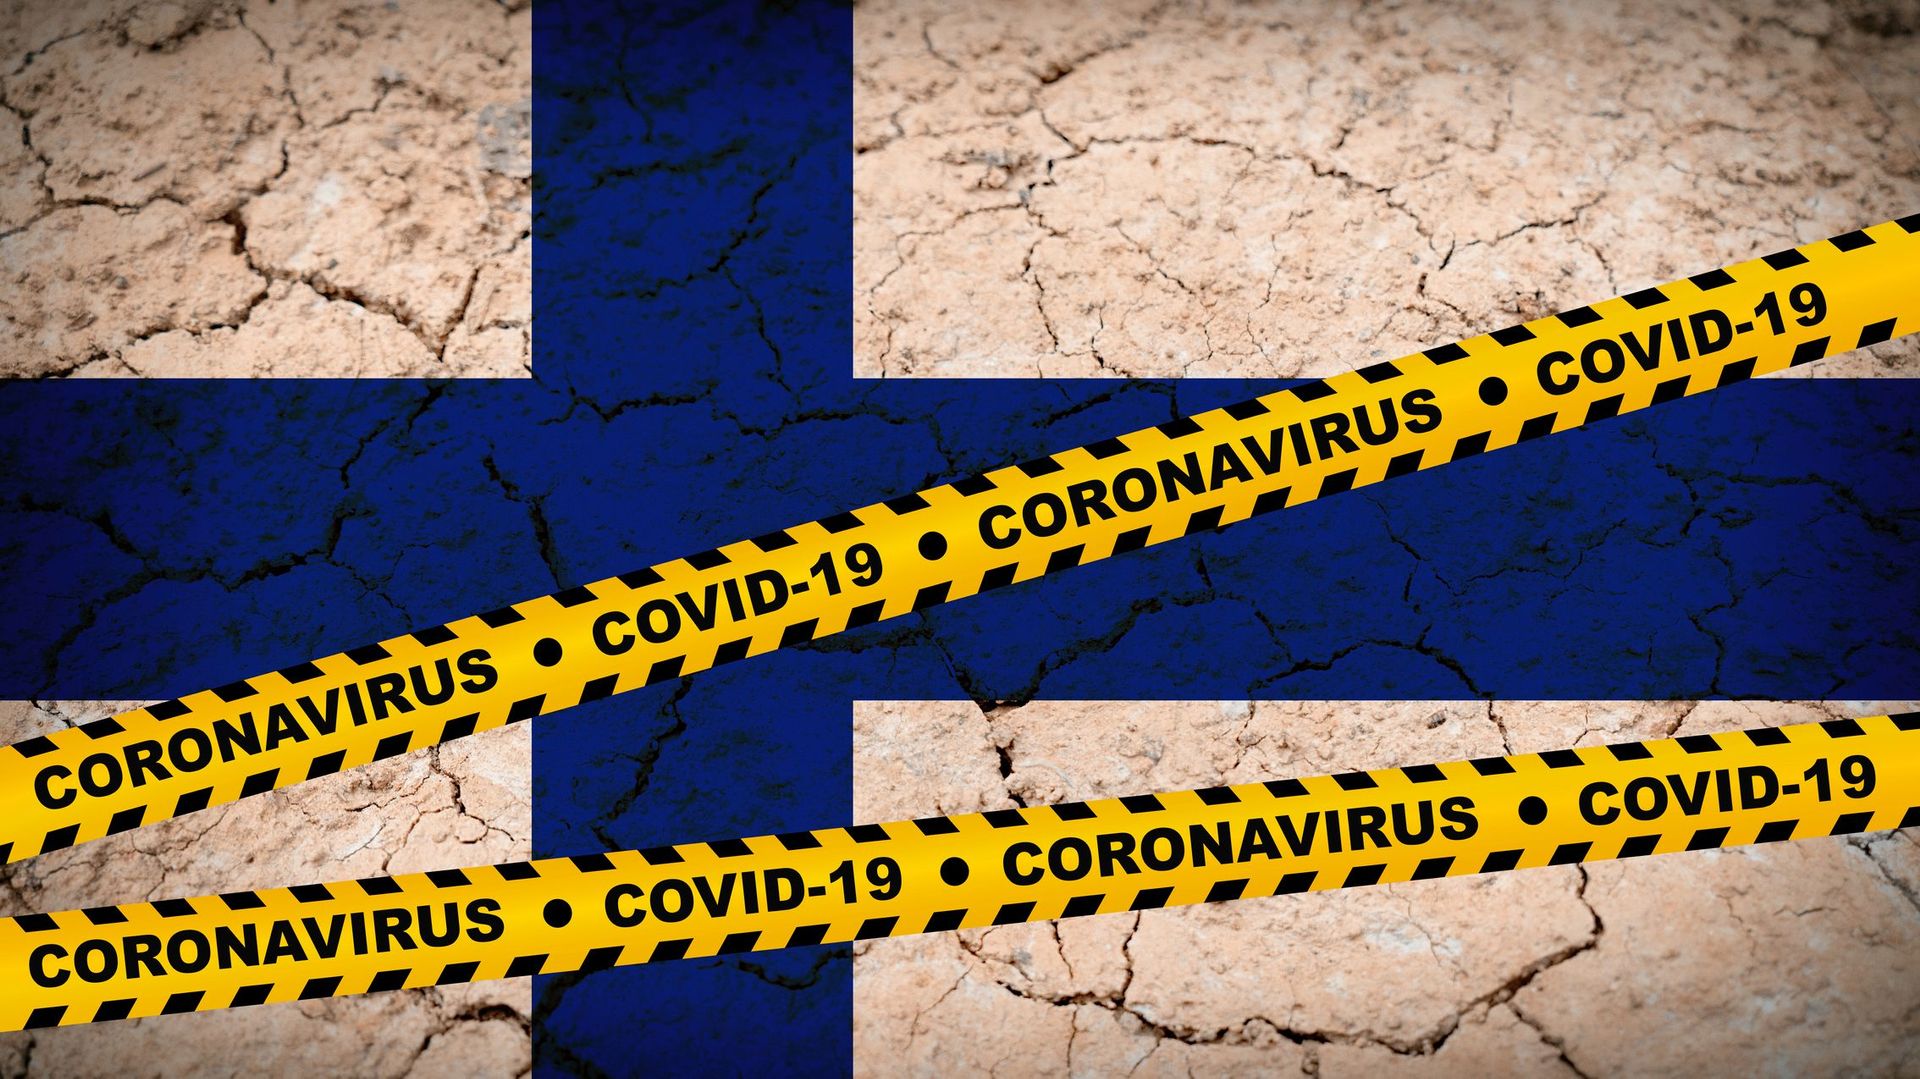 Coronavirus : la Finlande élargit encore ses restrictions aux frontières, les "plus sévères de l’UE"